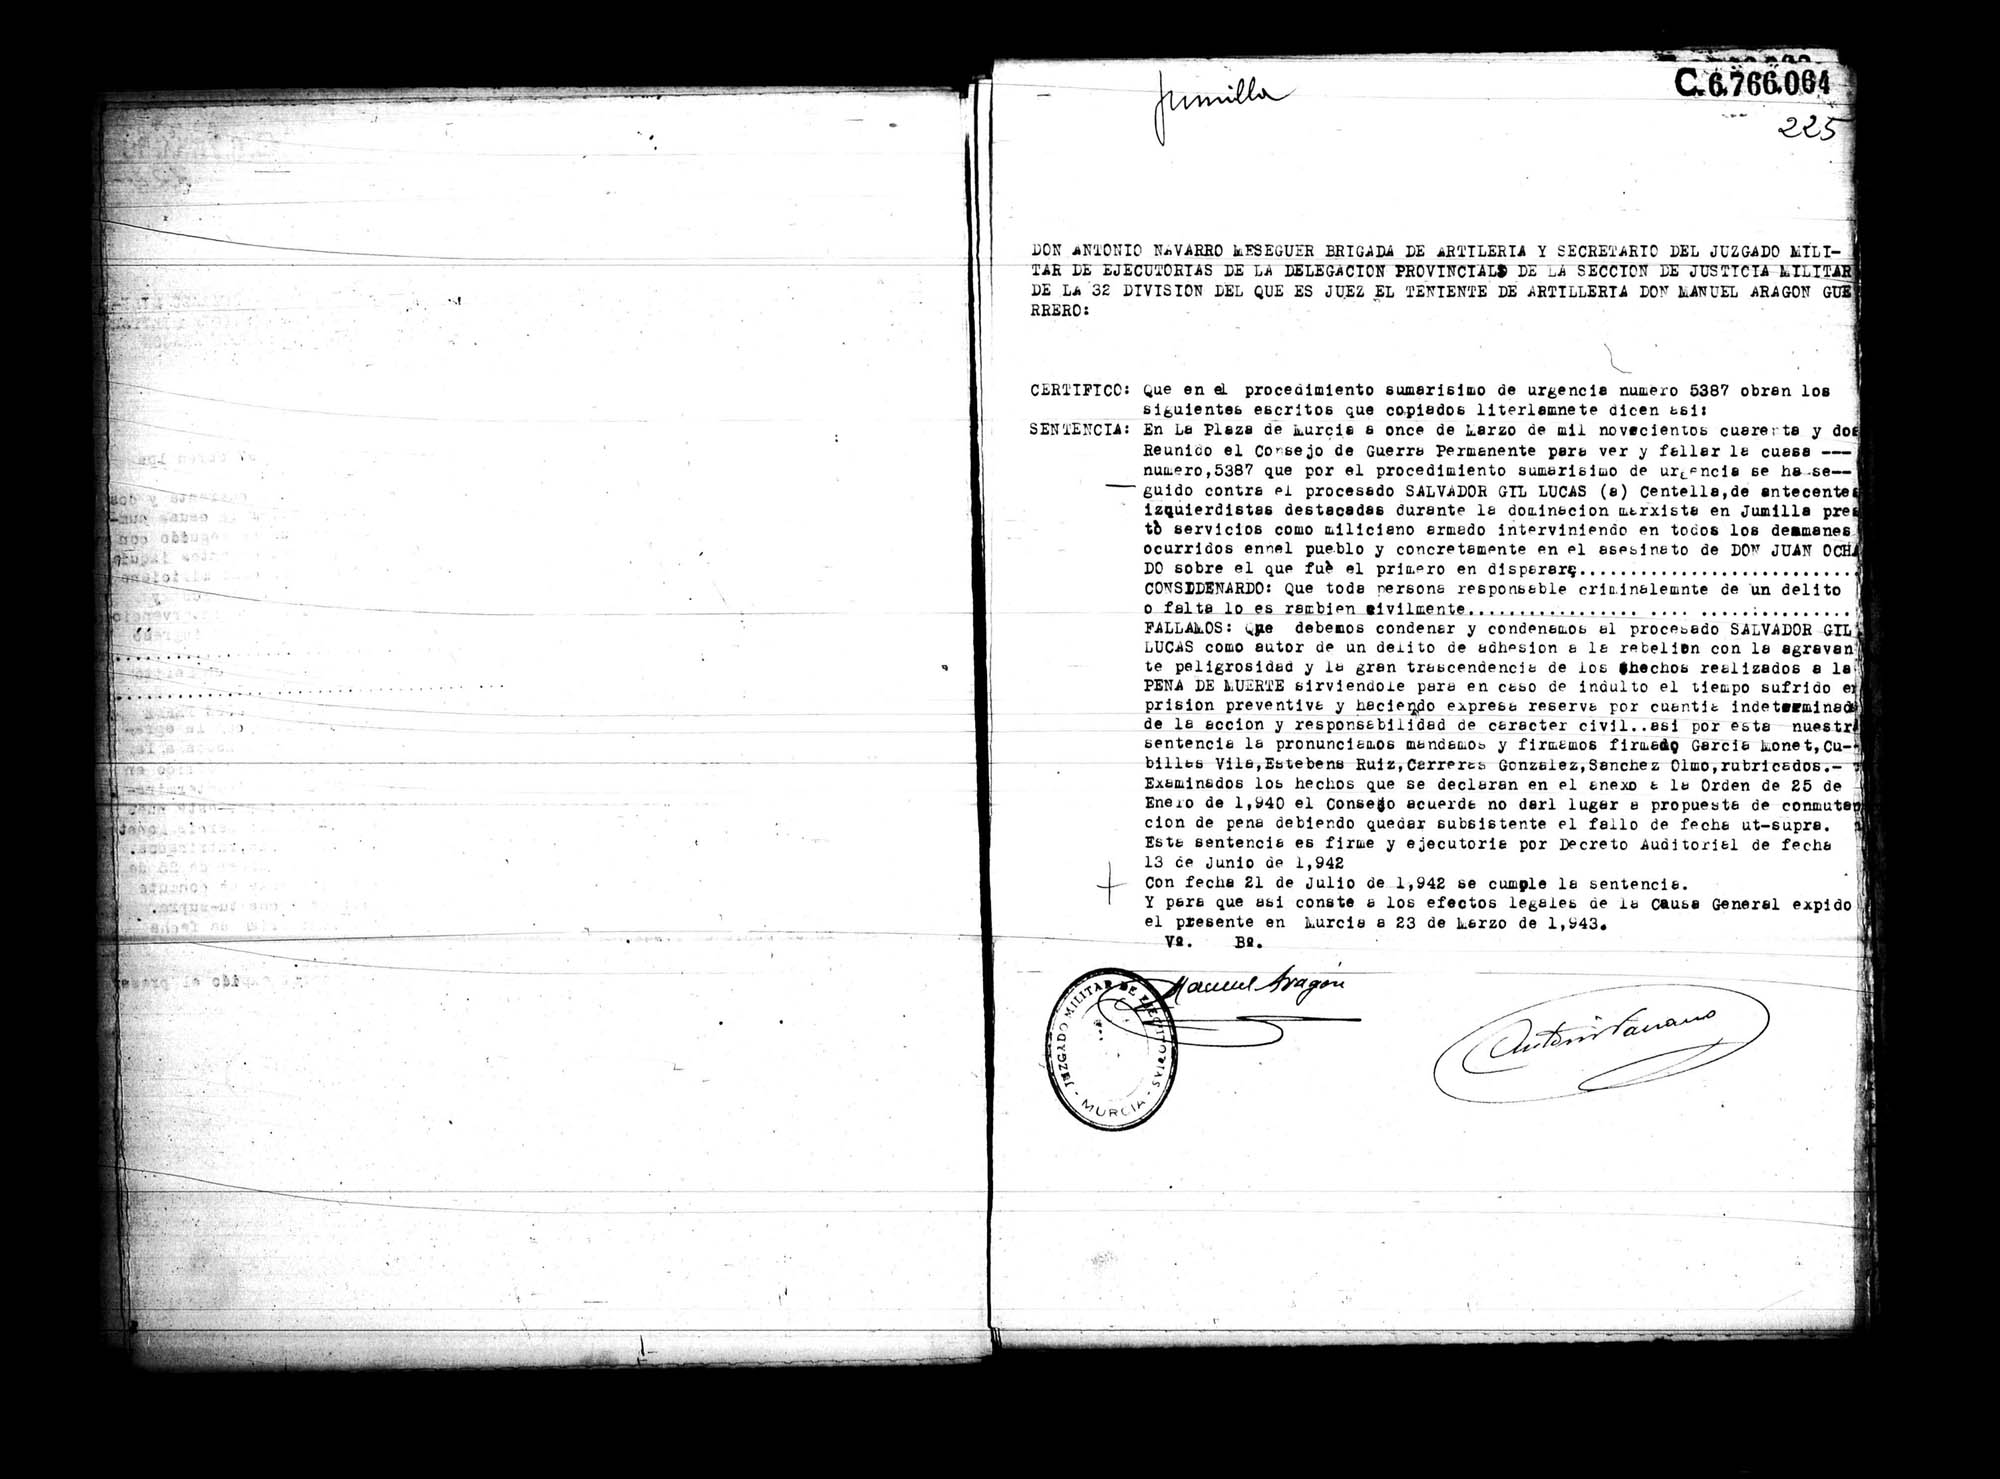 Certificado de la sentencia pronunciada contra Salvador Gil Lucas, causa 5387, el 11 de marzo de 1942 en Murcia.